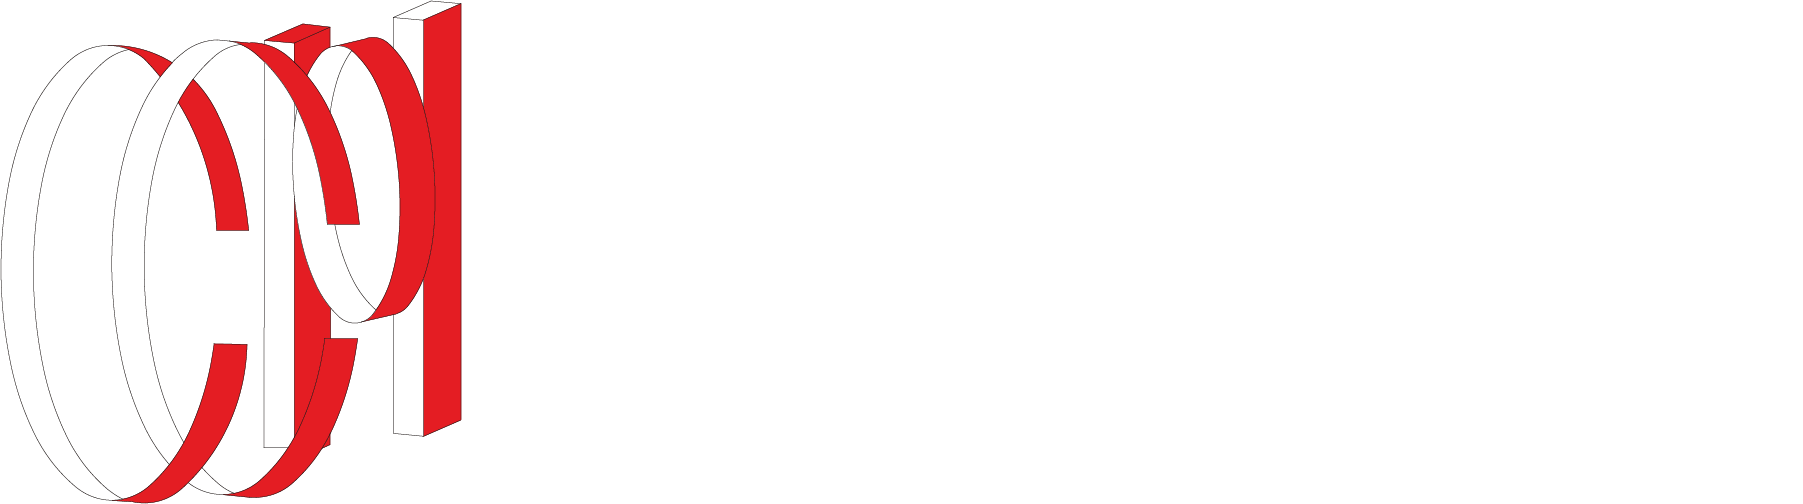 Carvalhal & Carvalhal